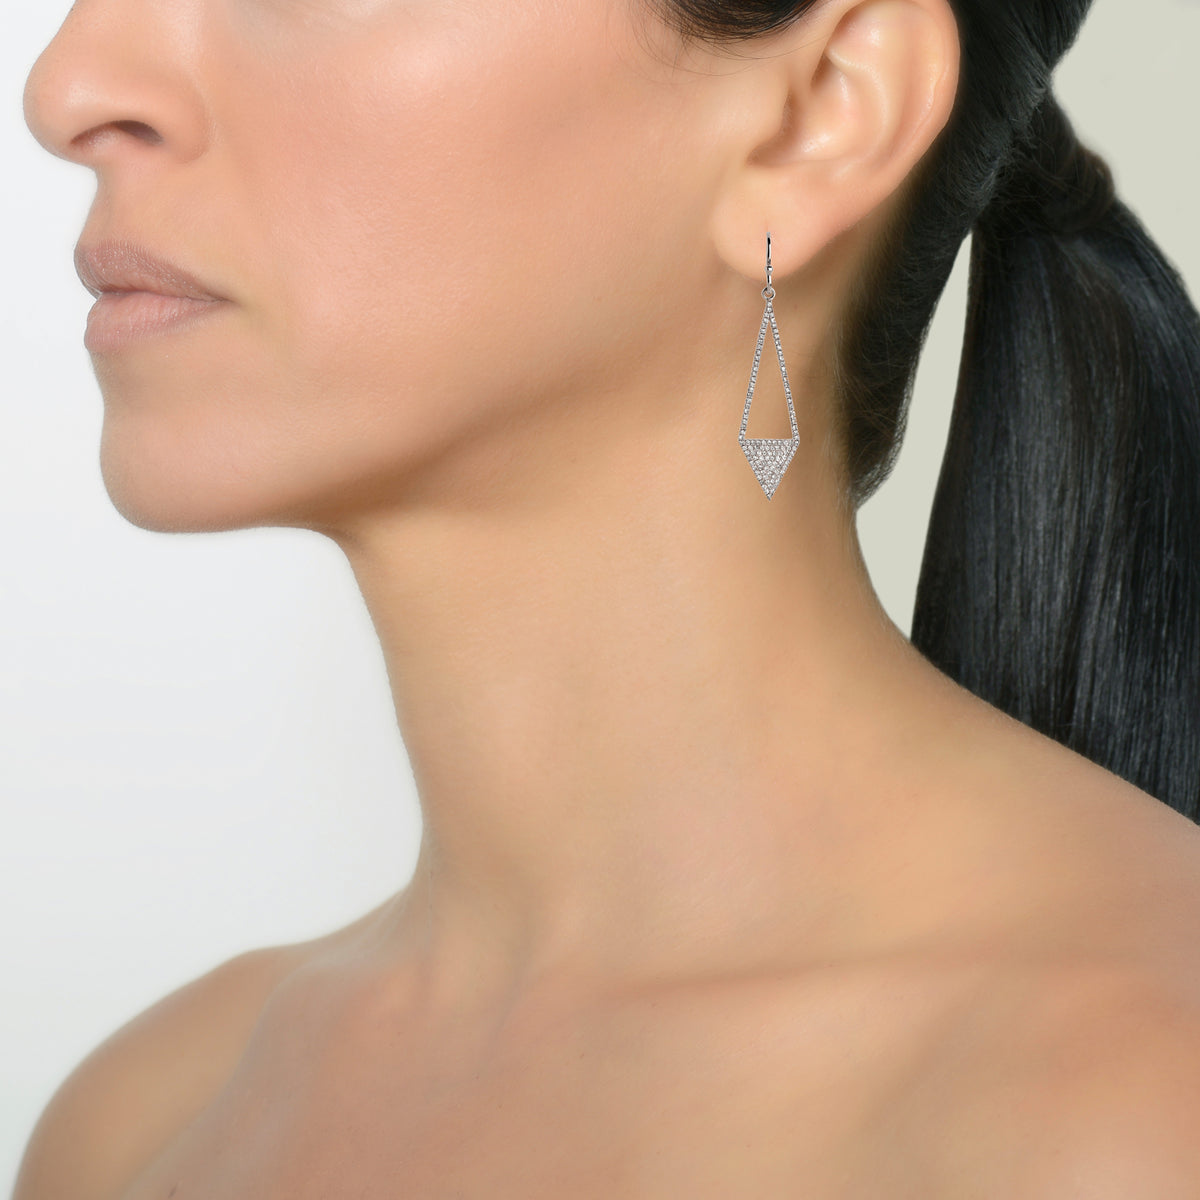 DIAMOND ARROW EARRINGS - Bridget King Jewelry